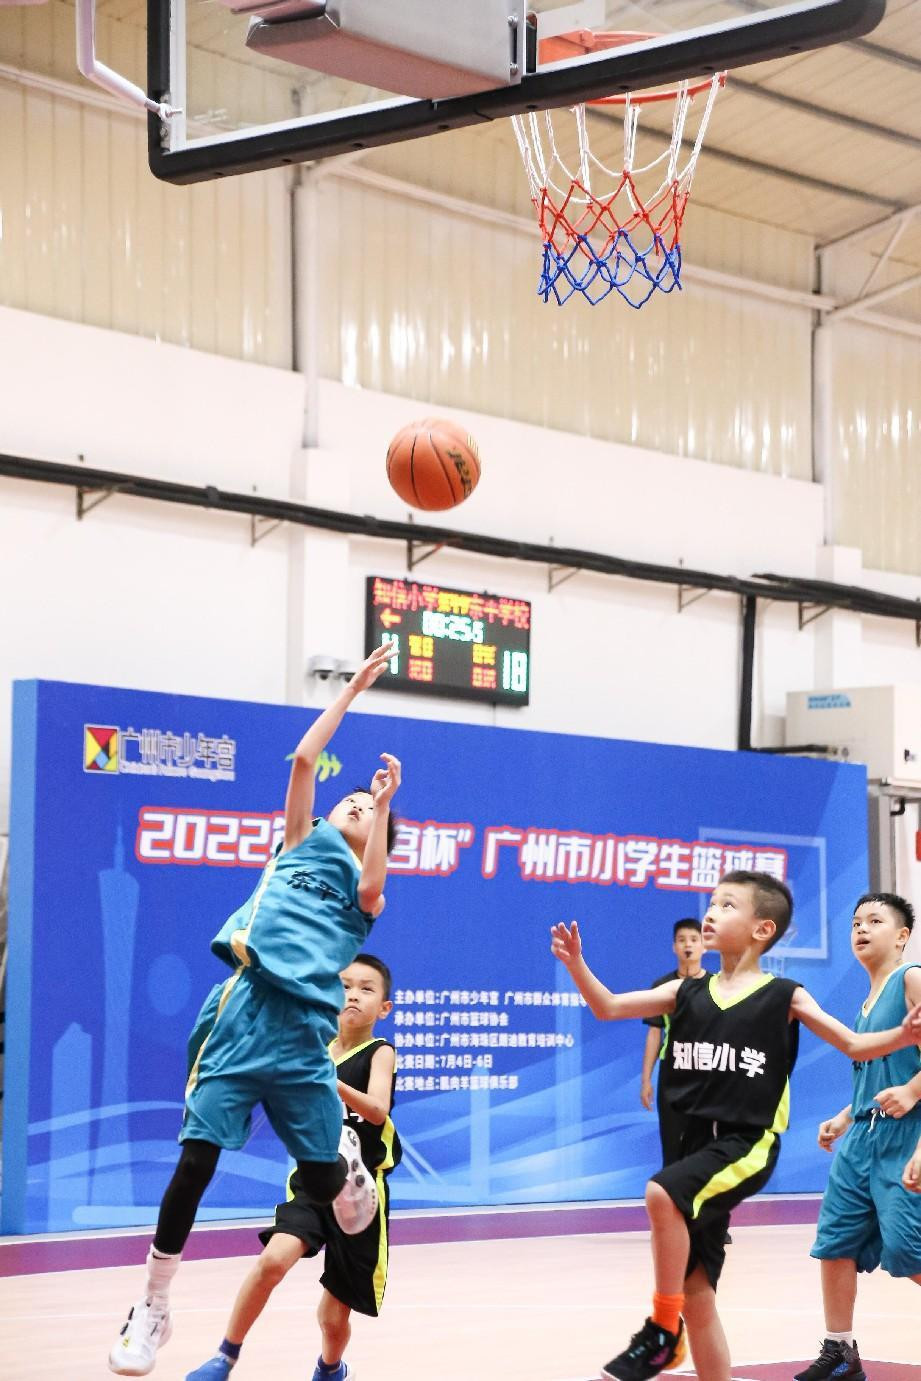 搭平台促“双减” 首届广州市小学生篮球赛开赛